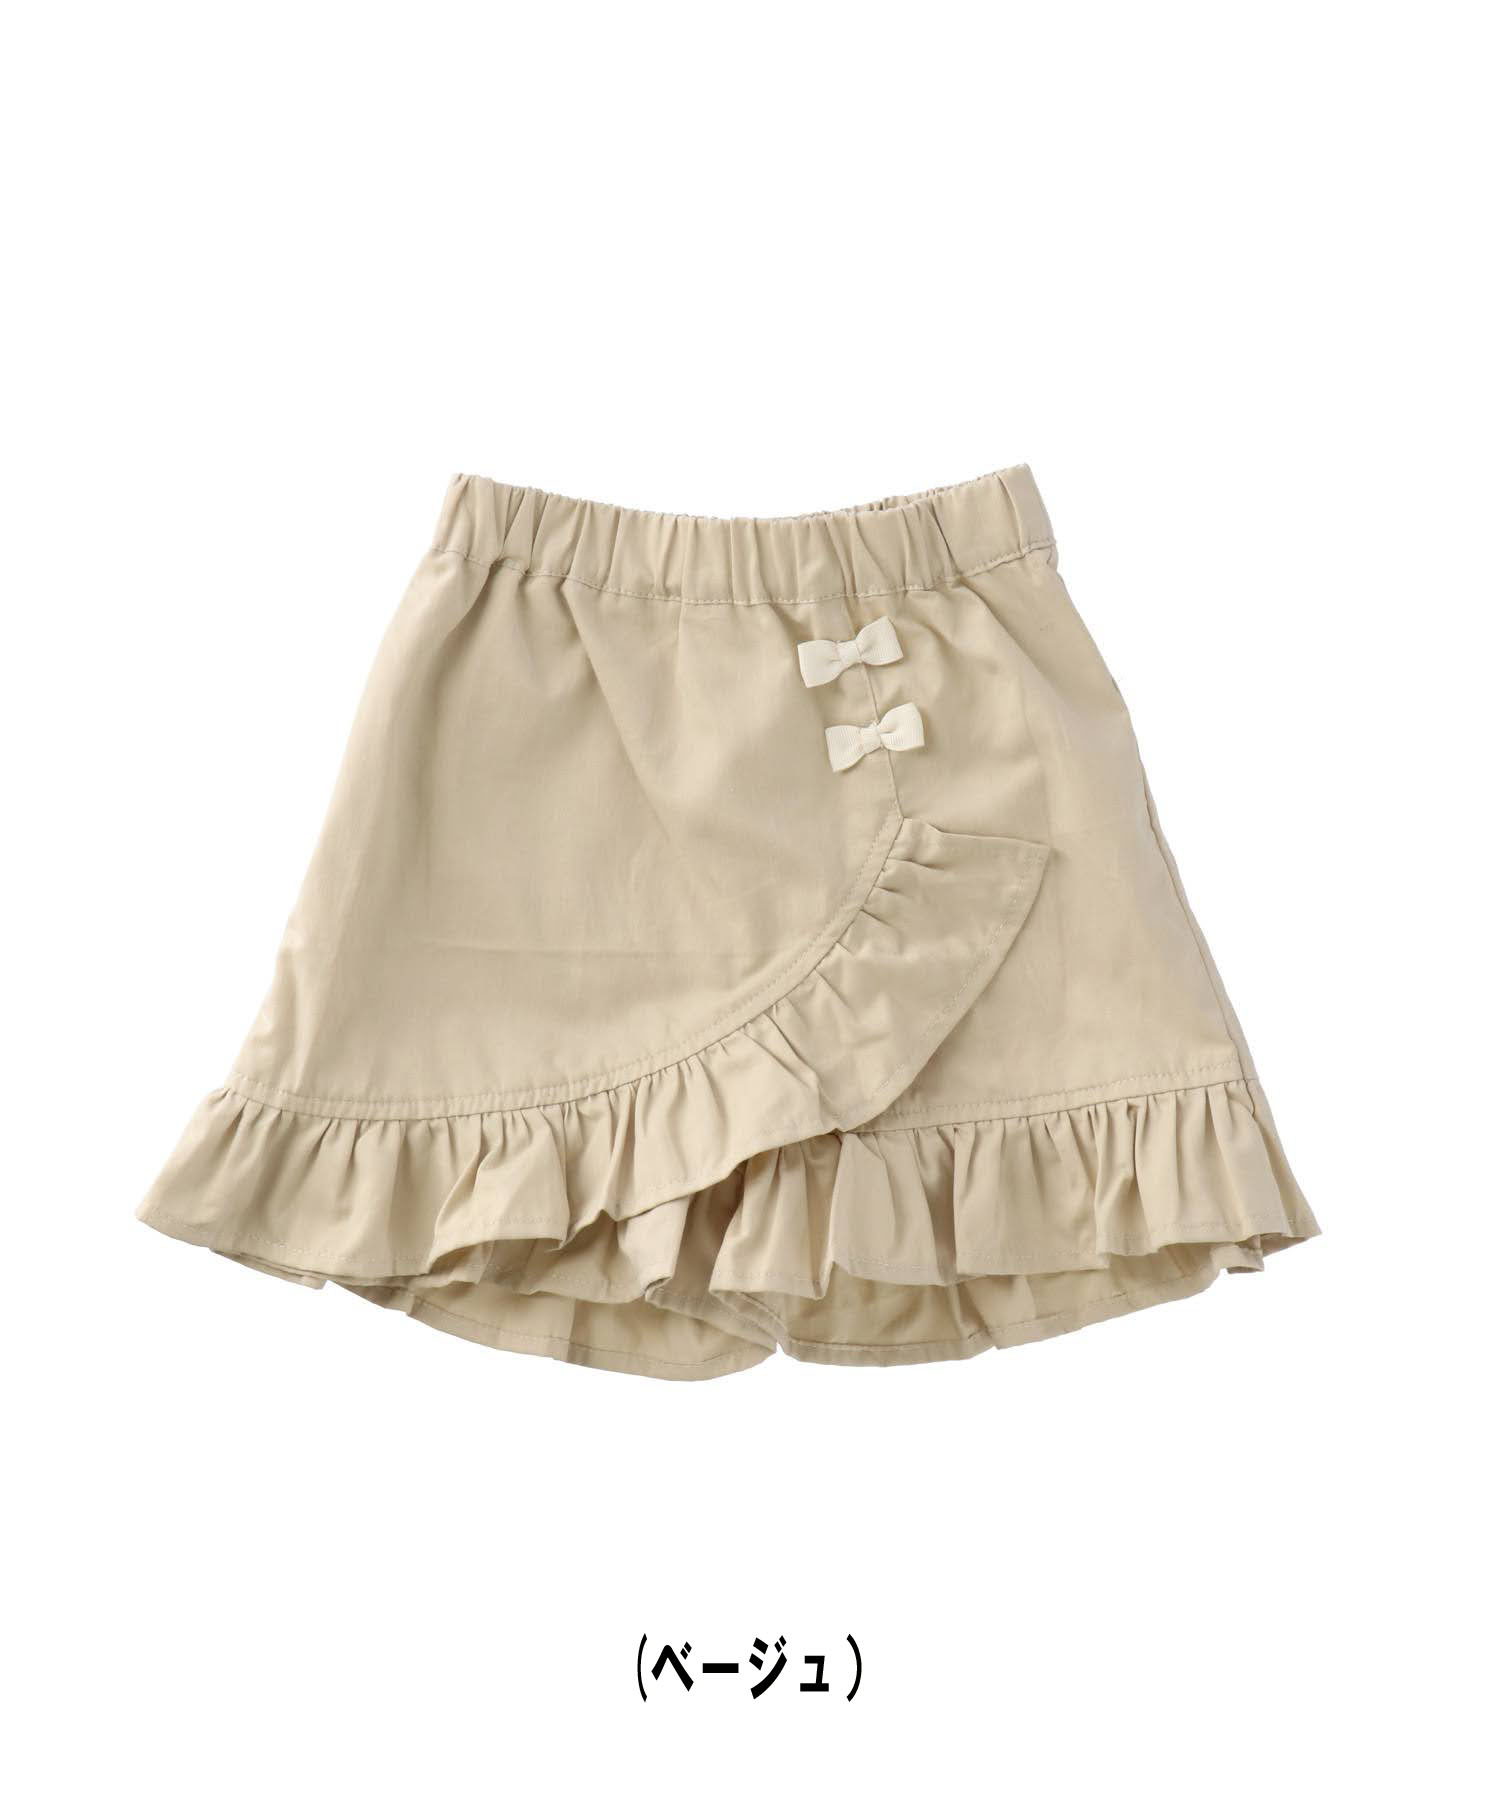 ラポシェビスキュイ・La poche bisucit/アシンメラップフリルショートパンツ（80cm-140cm）女の子・子供服